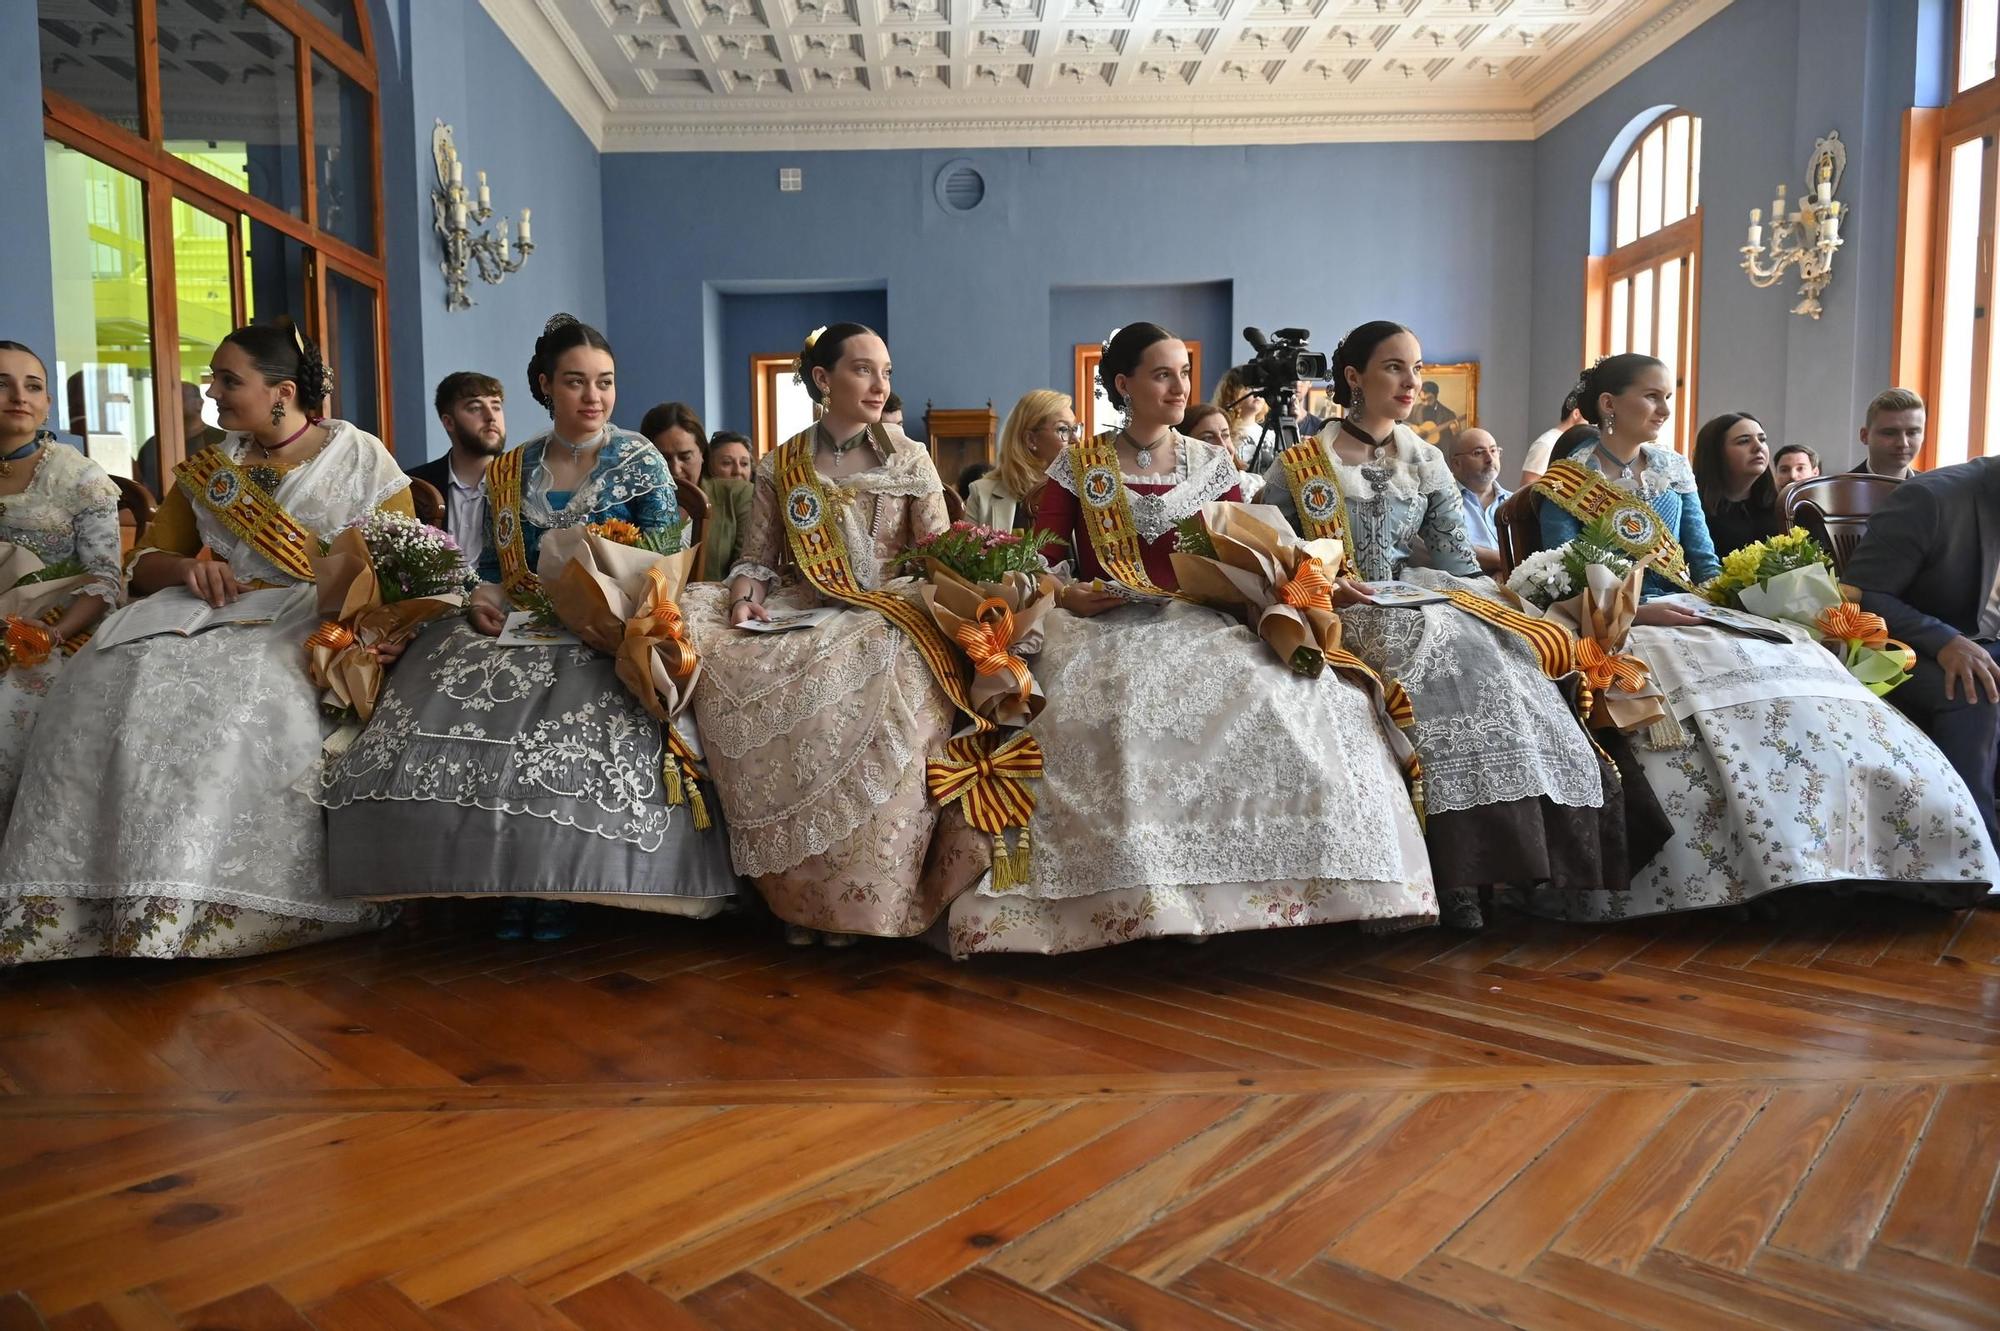 Les imatges de la presentació del llibret amb els actes de les festes de Sant Pasqual a Vila-real